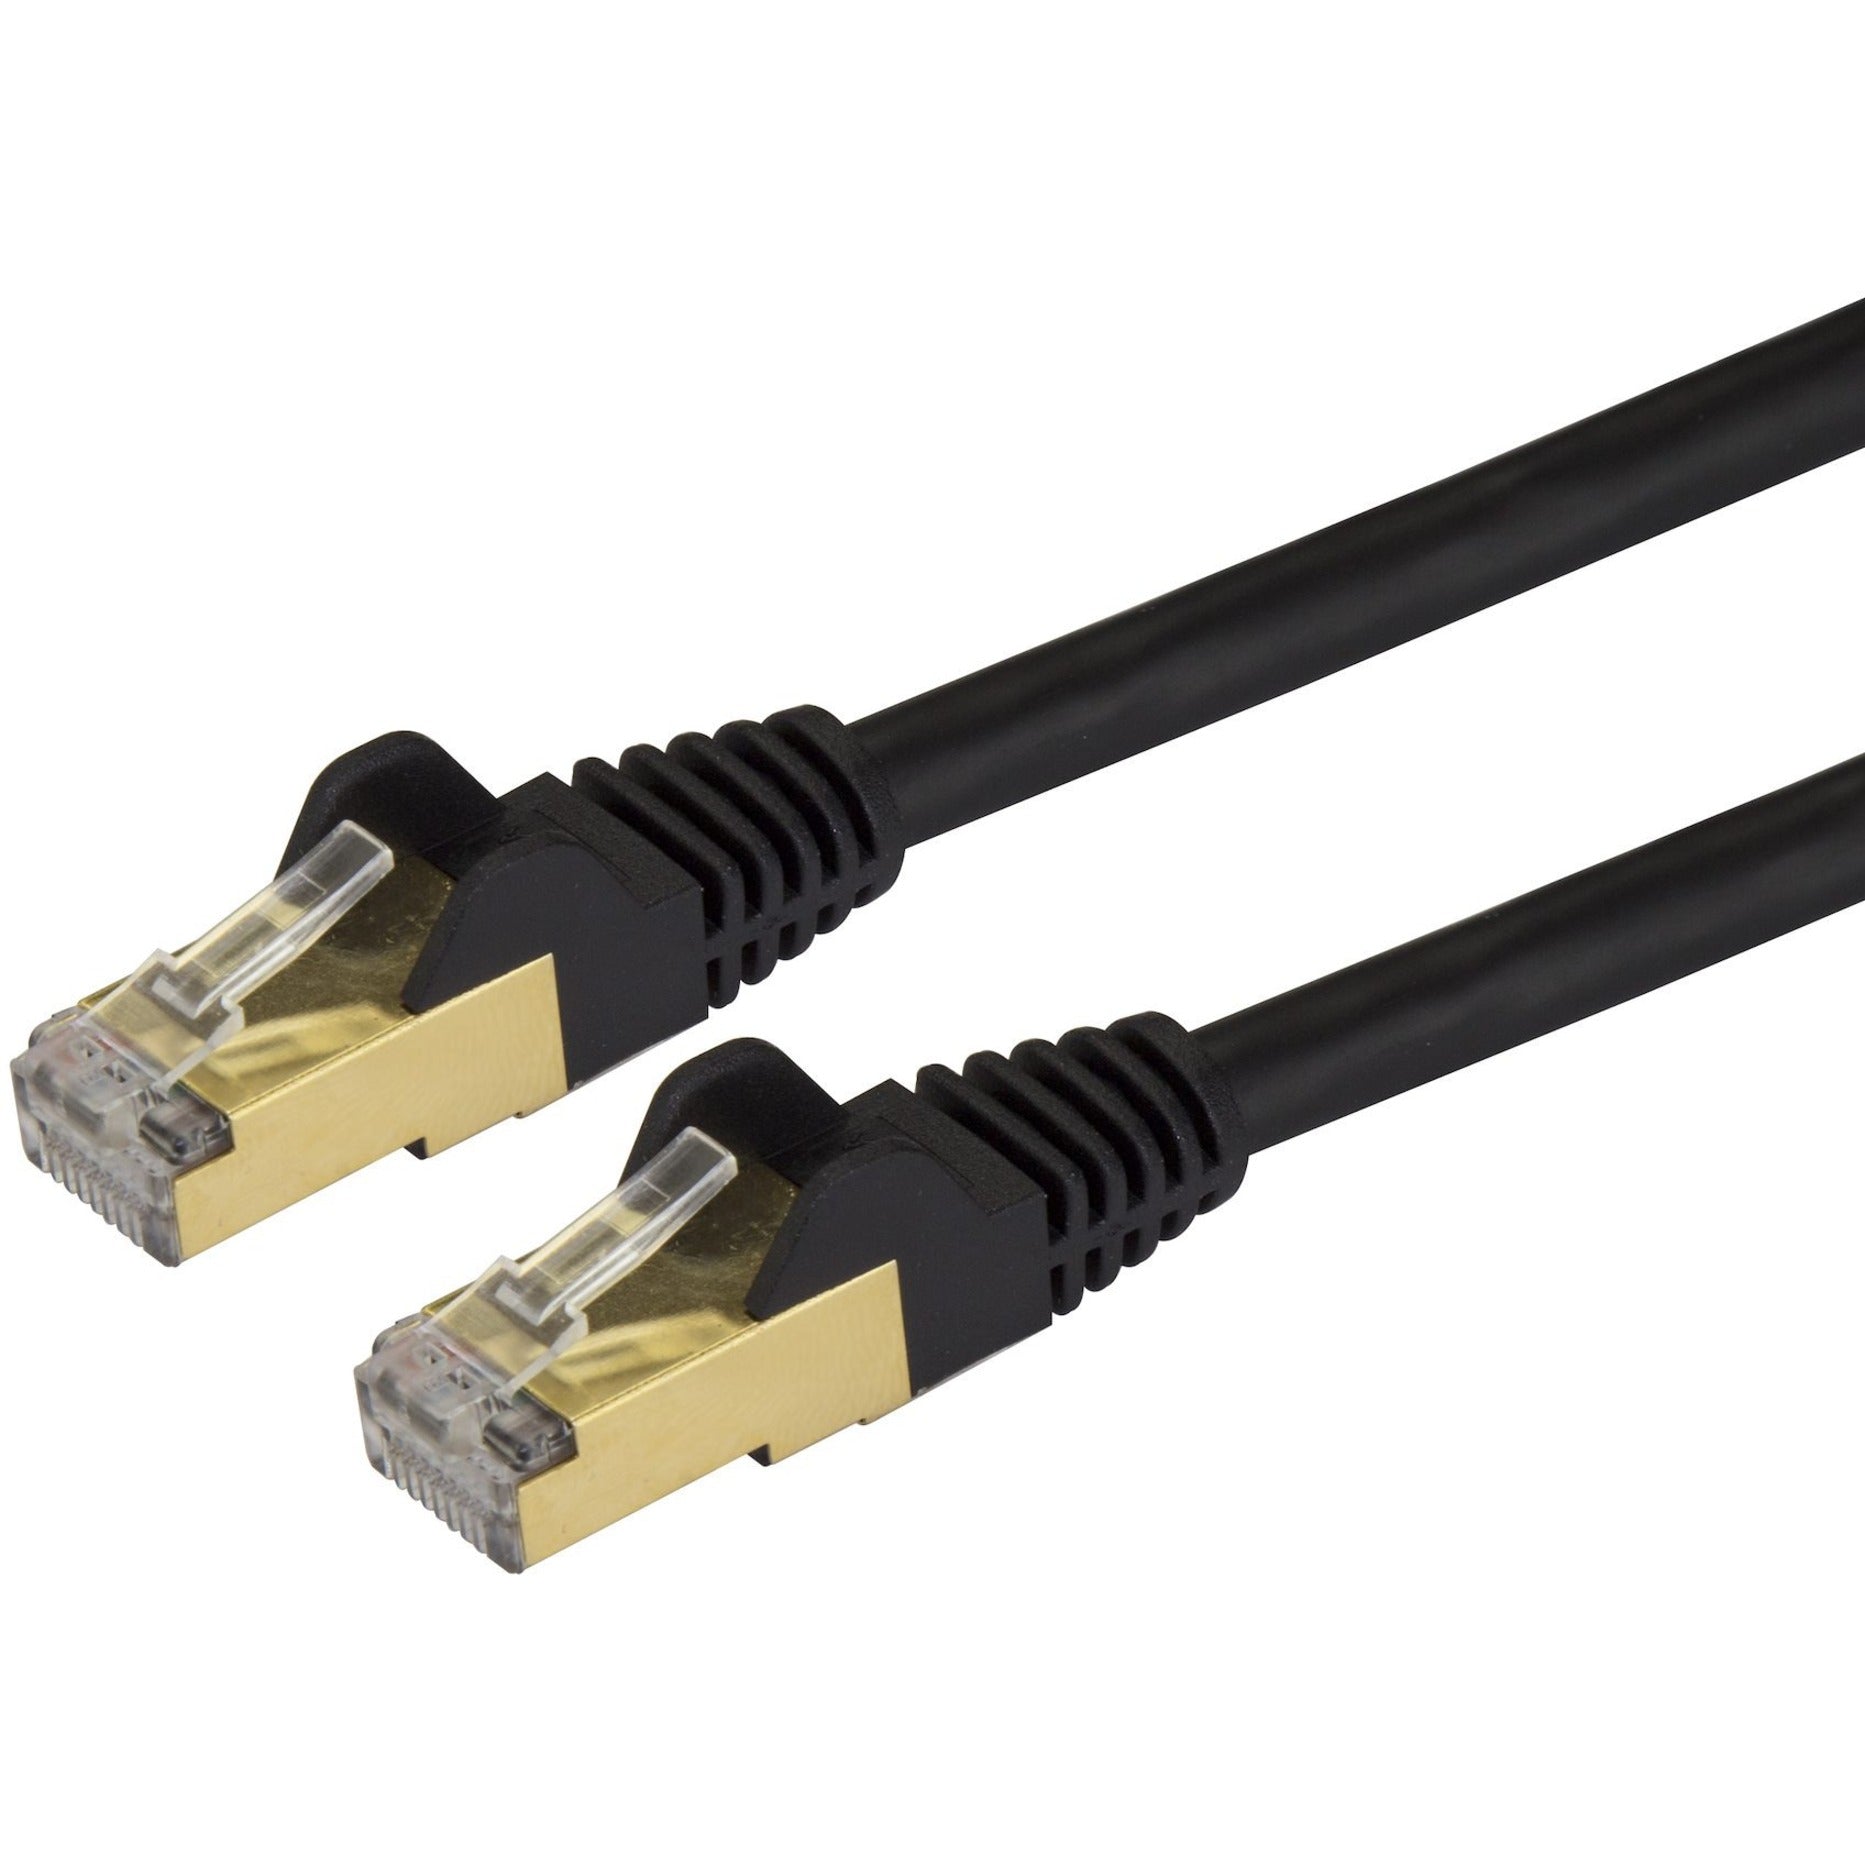 StarTech.com C6ASPAT15BK Cat6a Ethernet Patch Cable - Shielded (STP) - 15 ft., Black, Long Ethernet Cord